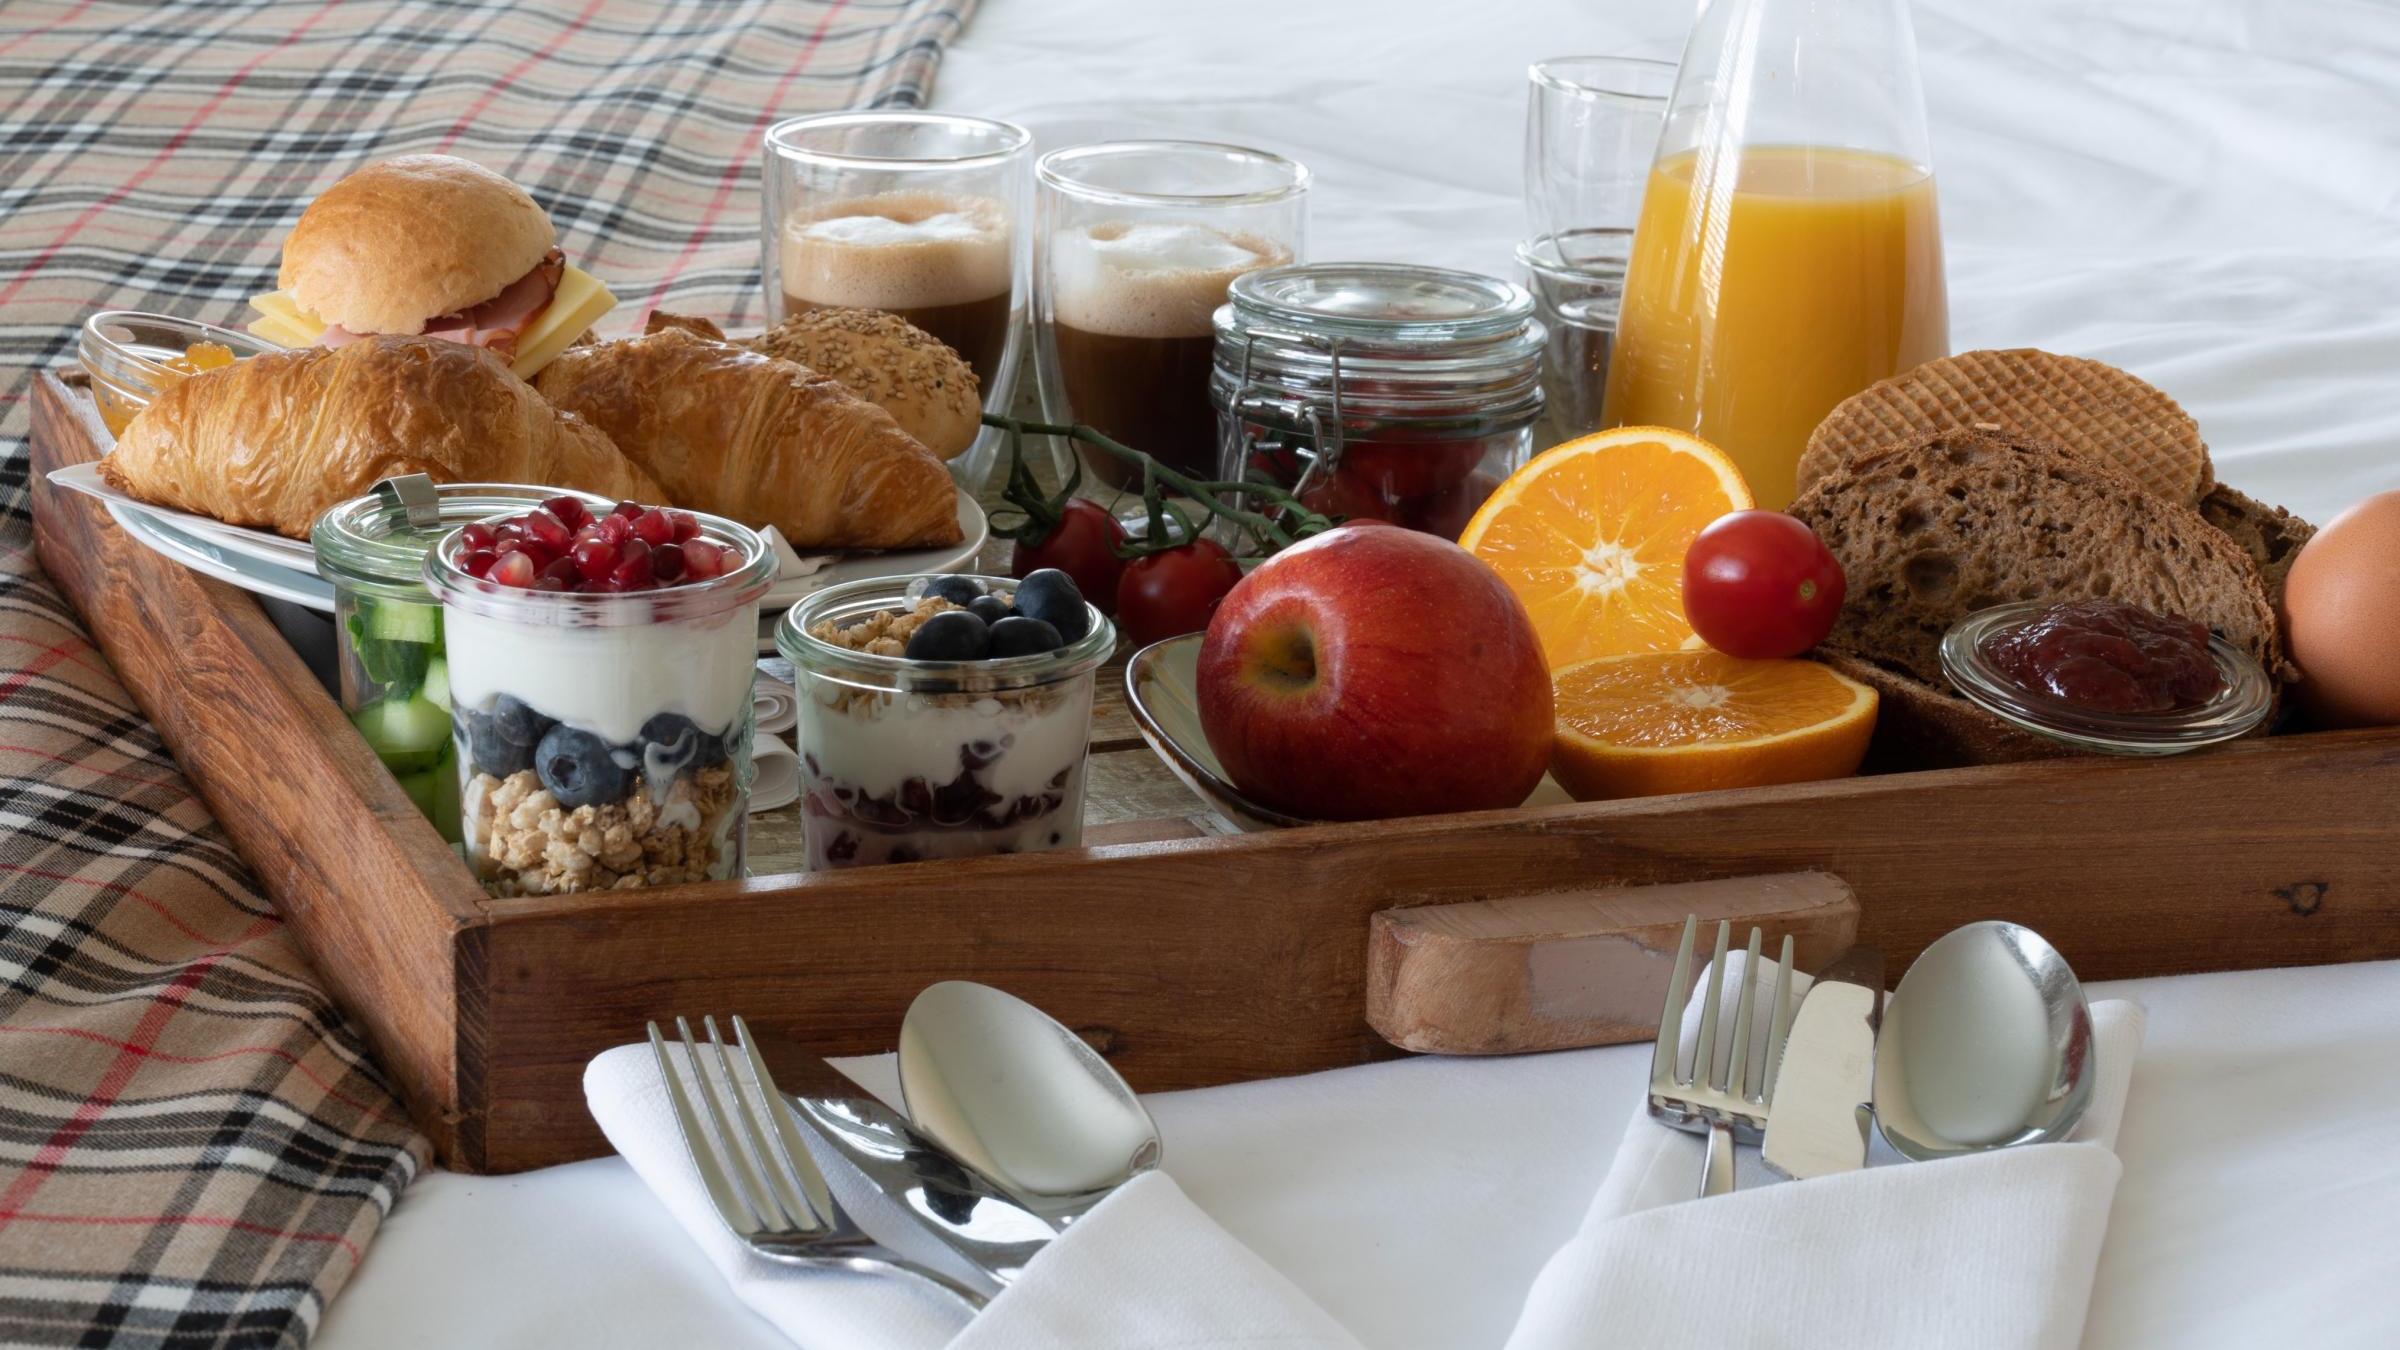 Stel uw favoriete ontbijt zelf samen van ons ontbijtbuffet!